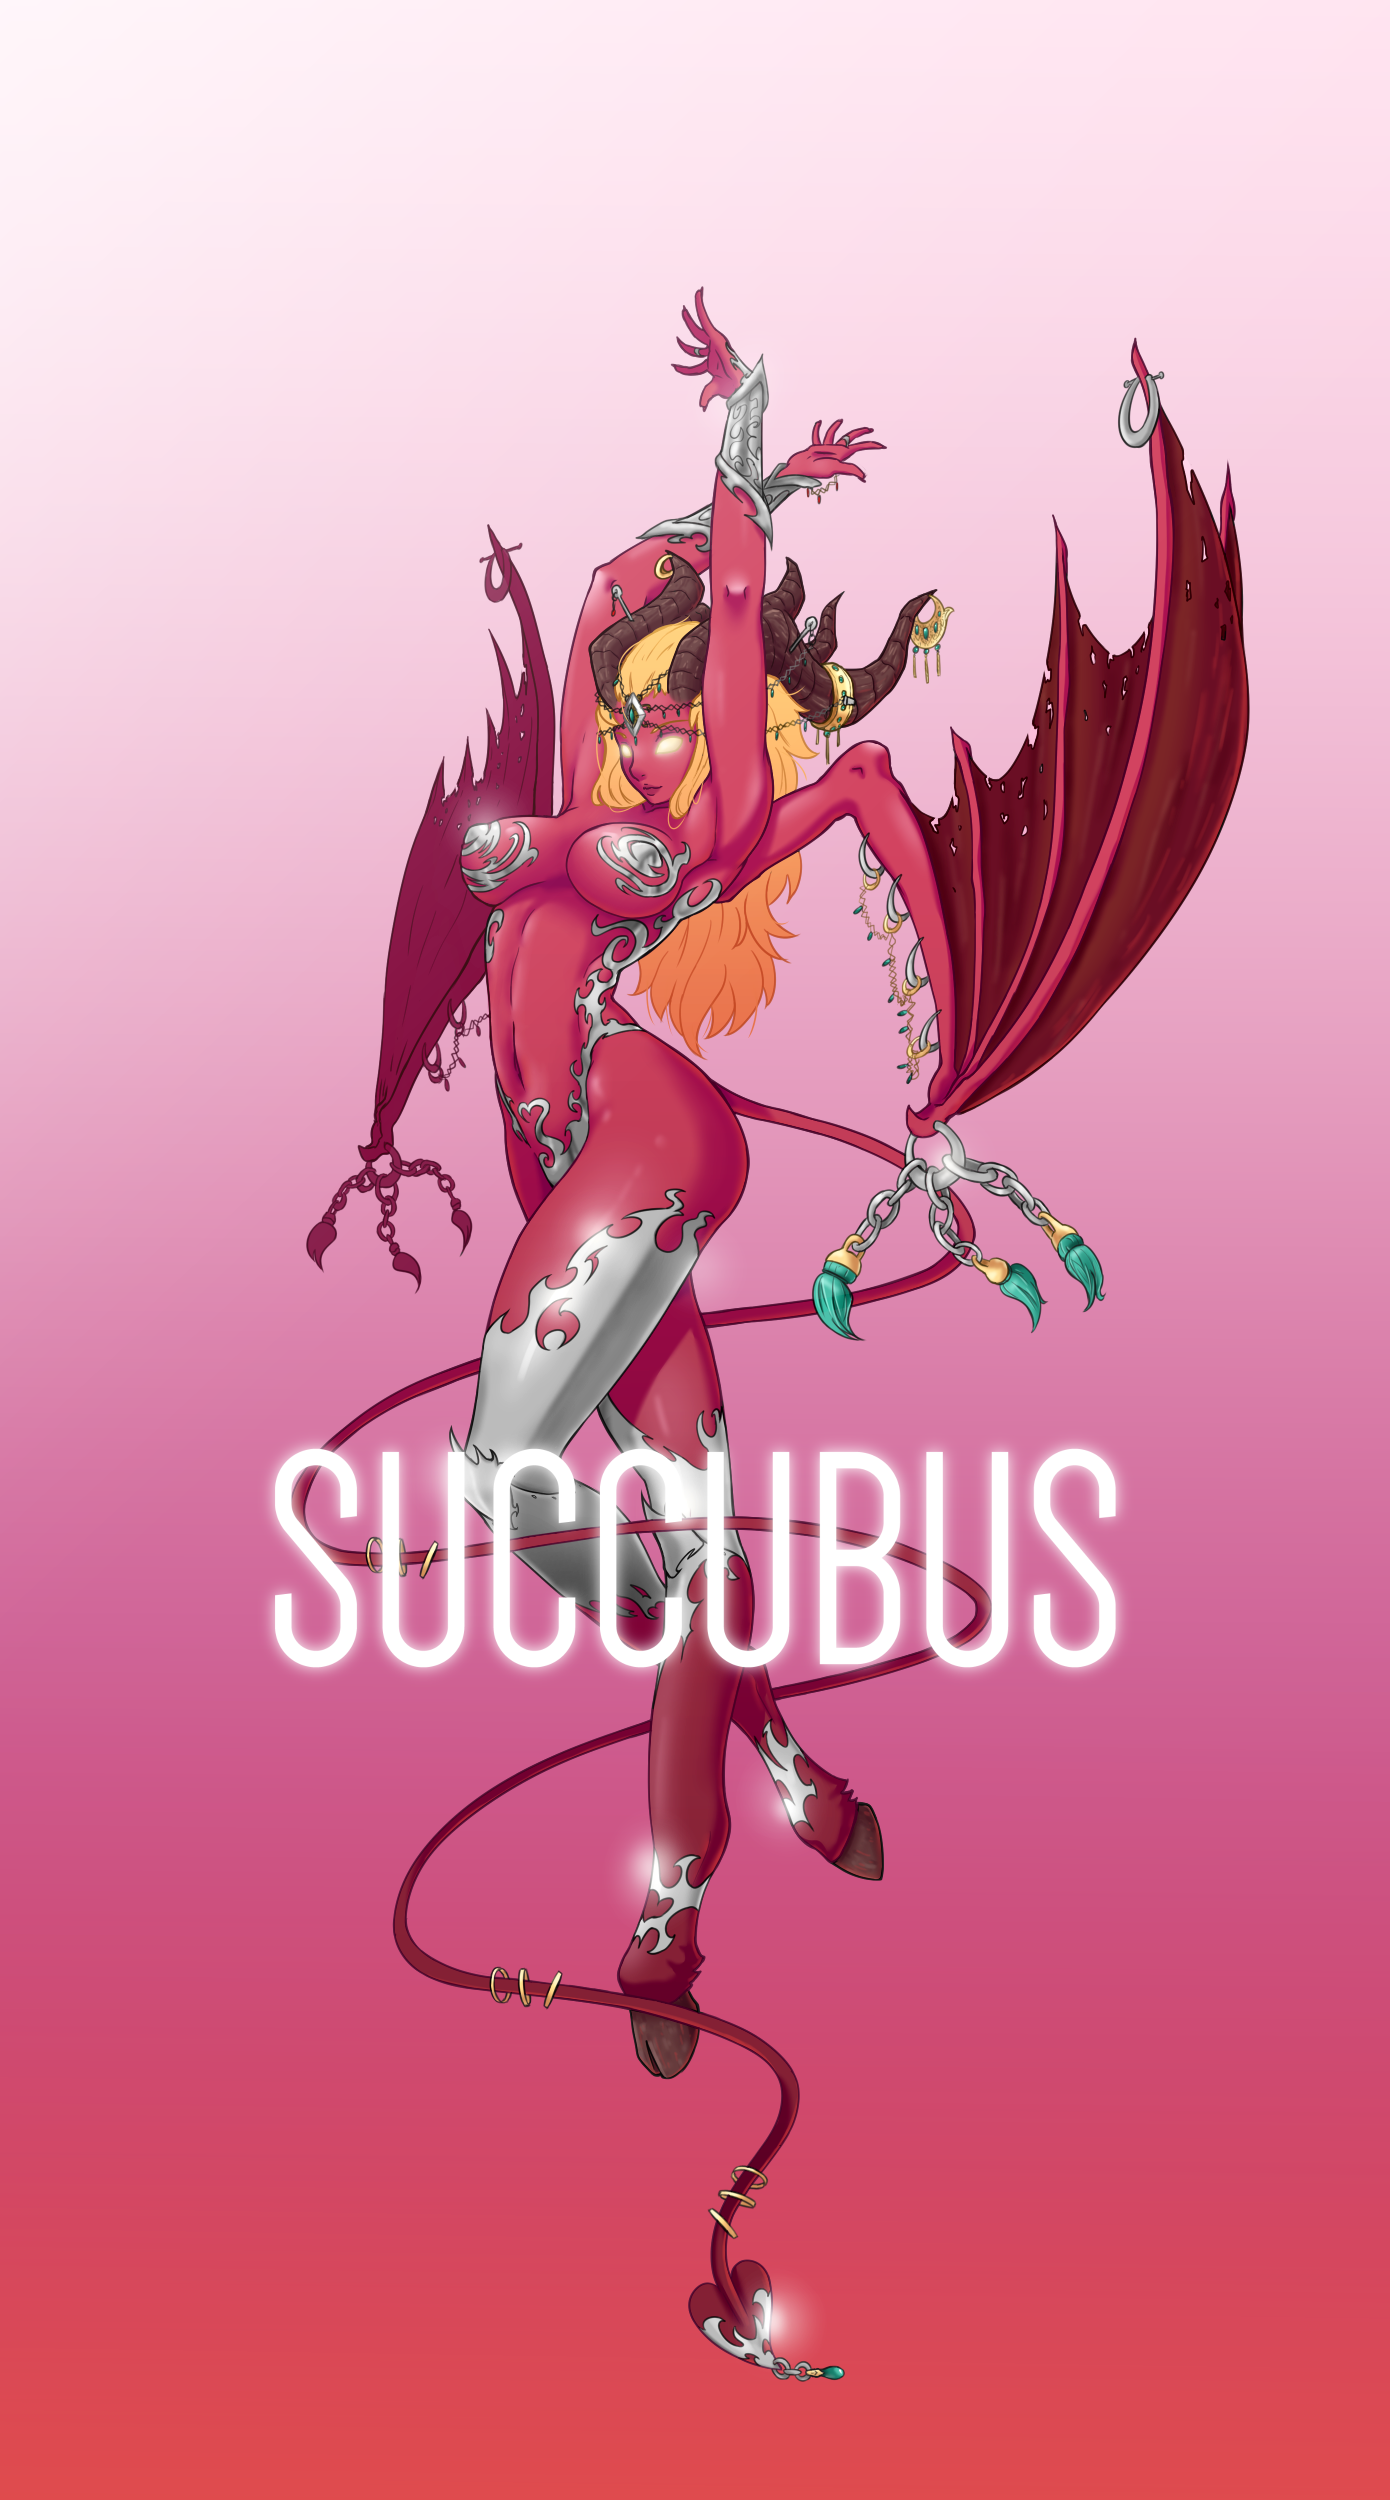 succubus